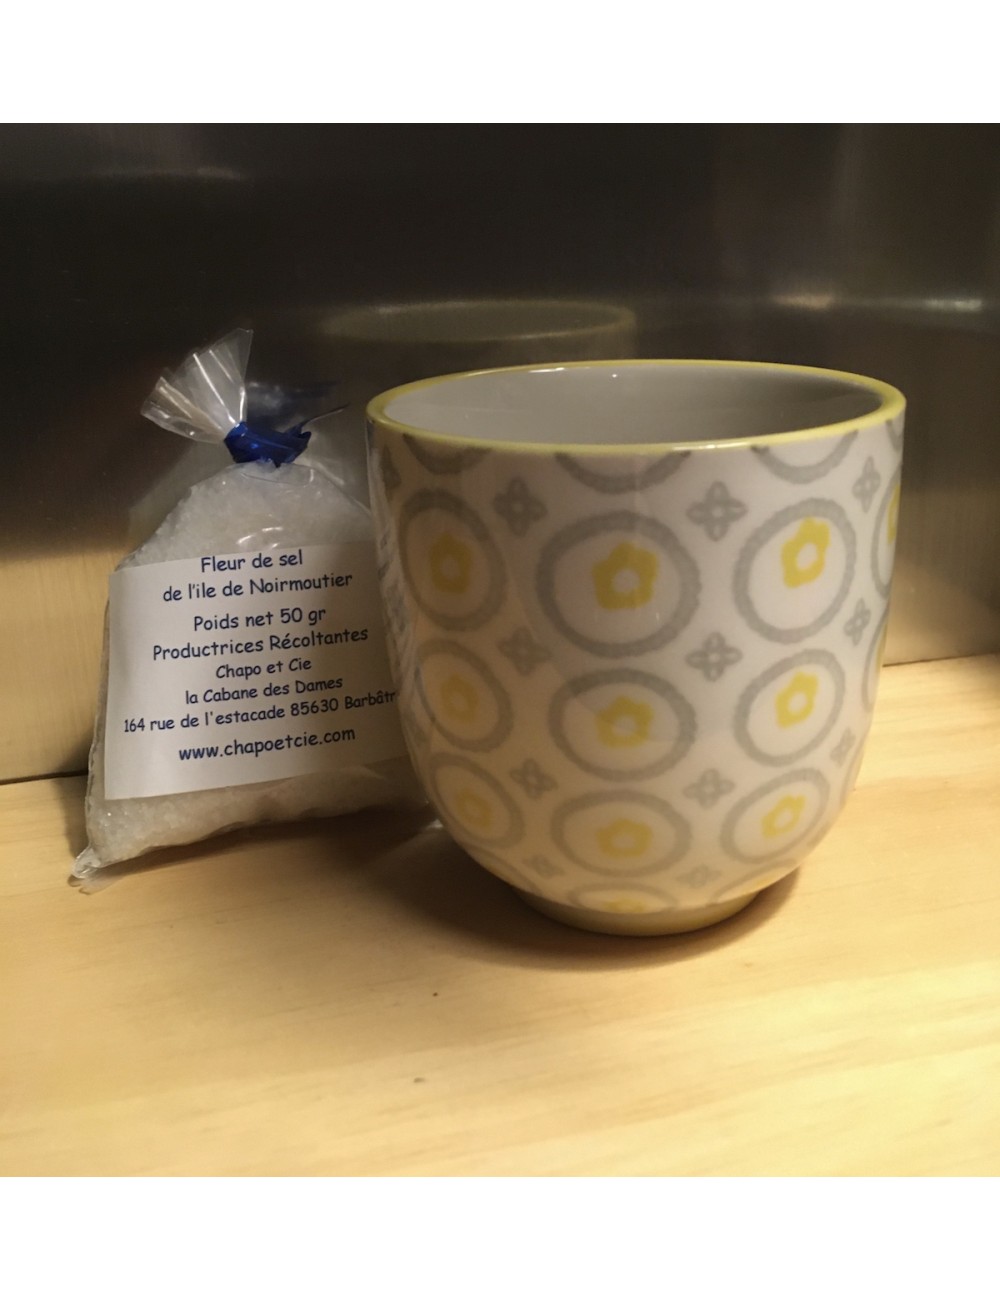 Une tasse motif gris et jaune proposée avec un sachet de 50gr de fleur de sel